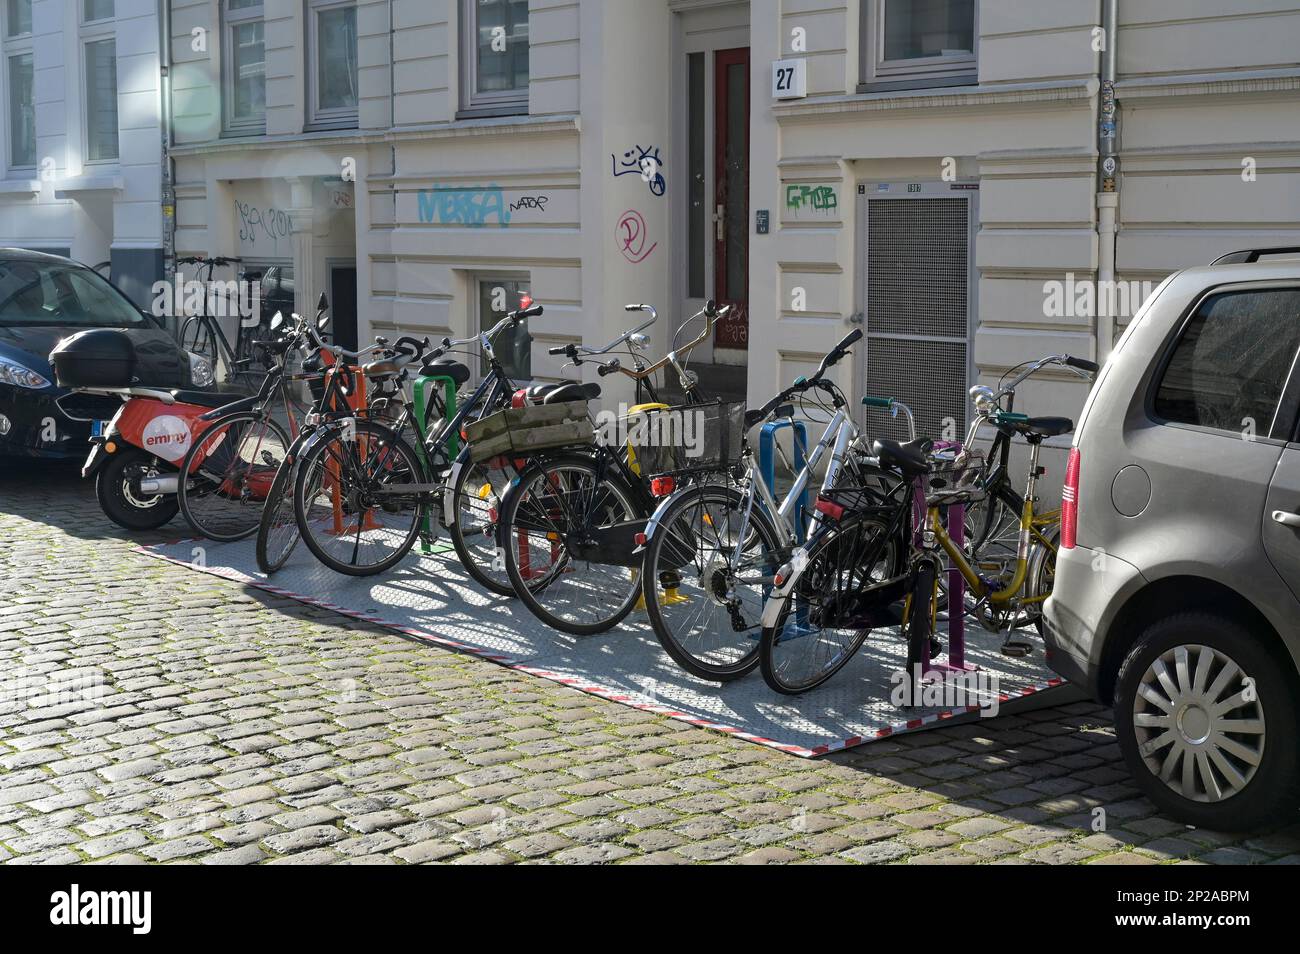 GERMANIA, Amburgo, città verde, passaggio del traffico, parcheggio per biciclette su strada / DEUTSCHLAND, Amburgo, velo City, Fahrrad Parkplatz auf der Straße anstelle eines PKW Parkplatzes, ein Auto zwölf Fahrräder Foto Stock